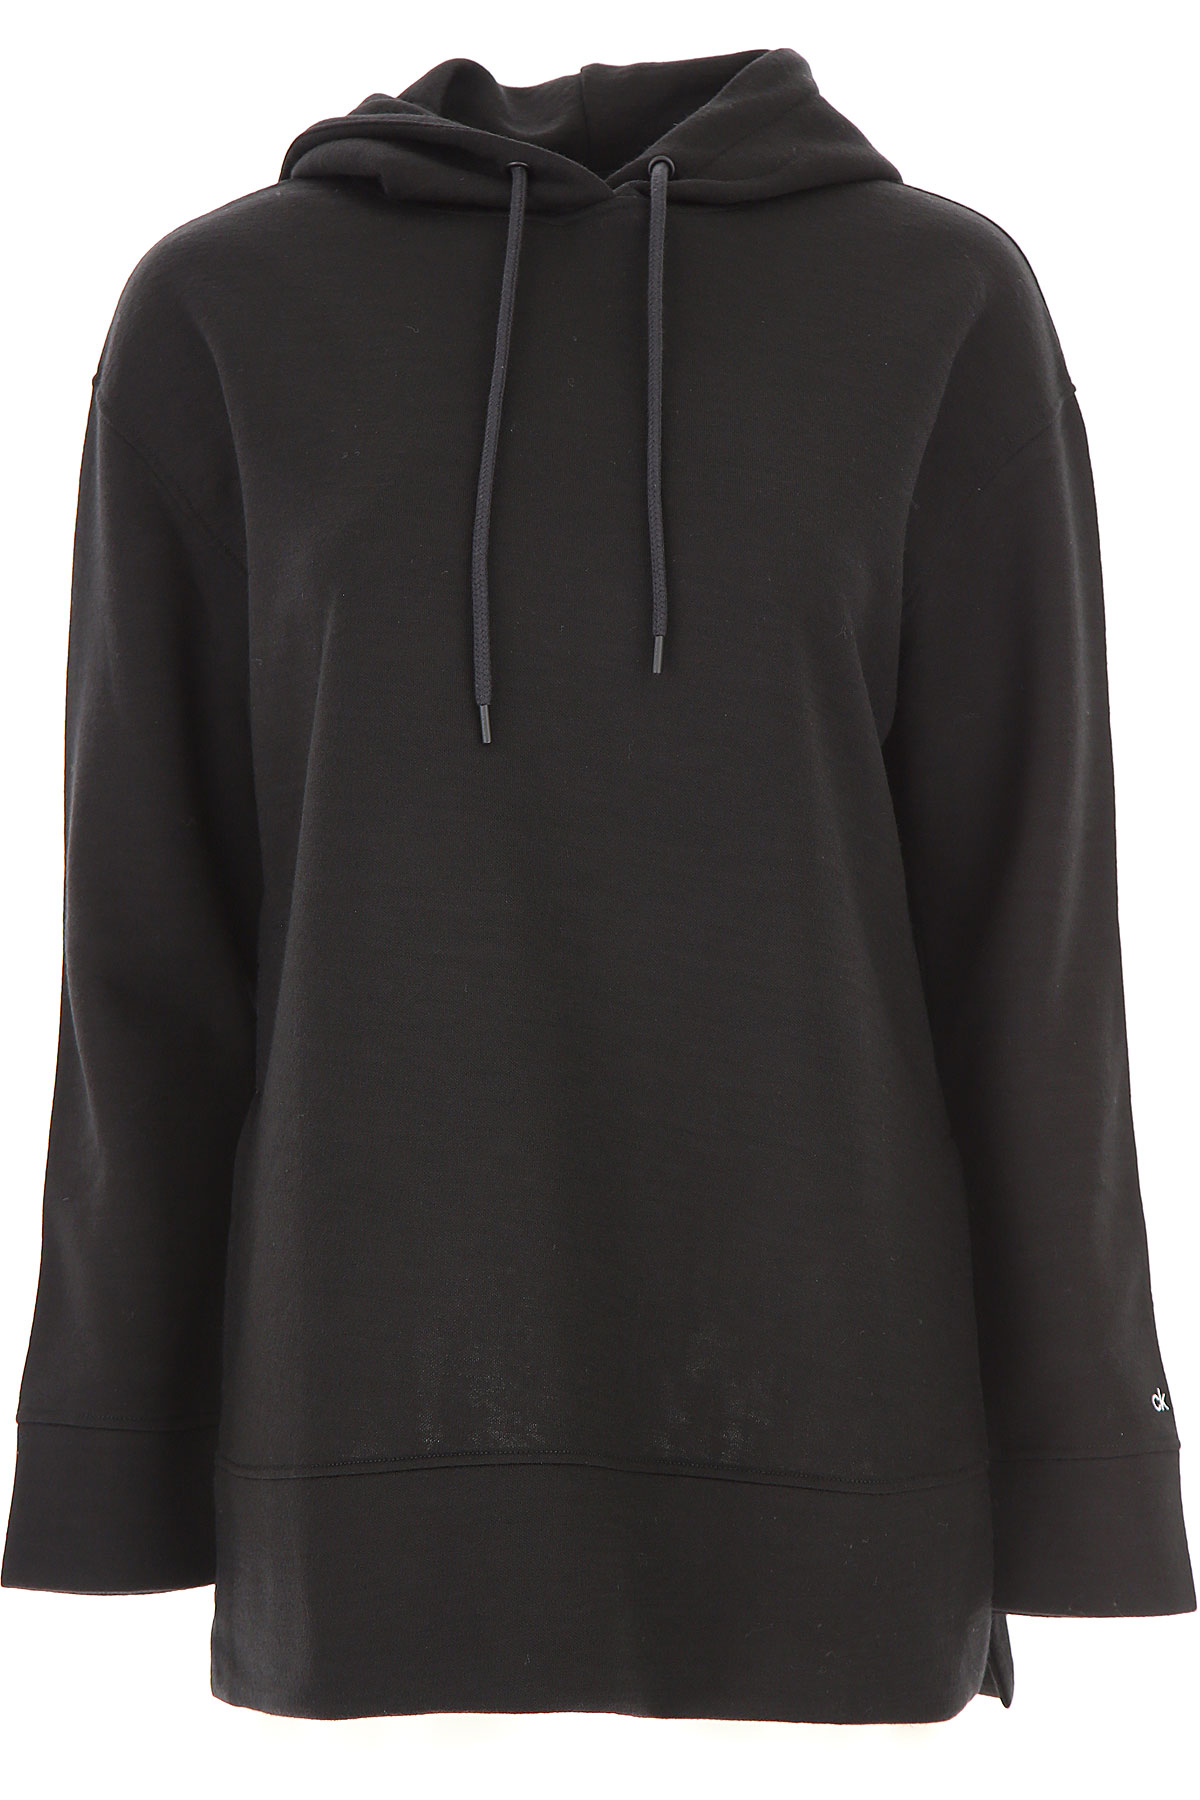 Calvin Klein Sweatshirt für Damen, Kapuzenpulli, Hoodie, Sweats Günstig im Sale, Schwarz, Viskose, 2017, 38 40 44 M